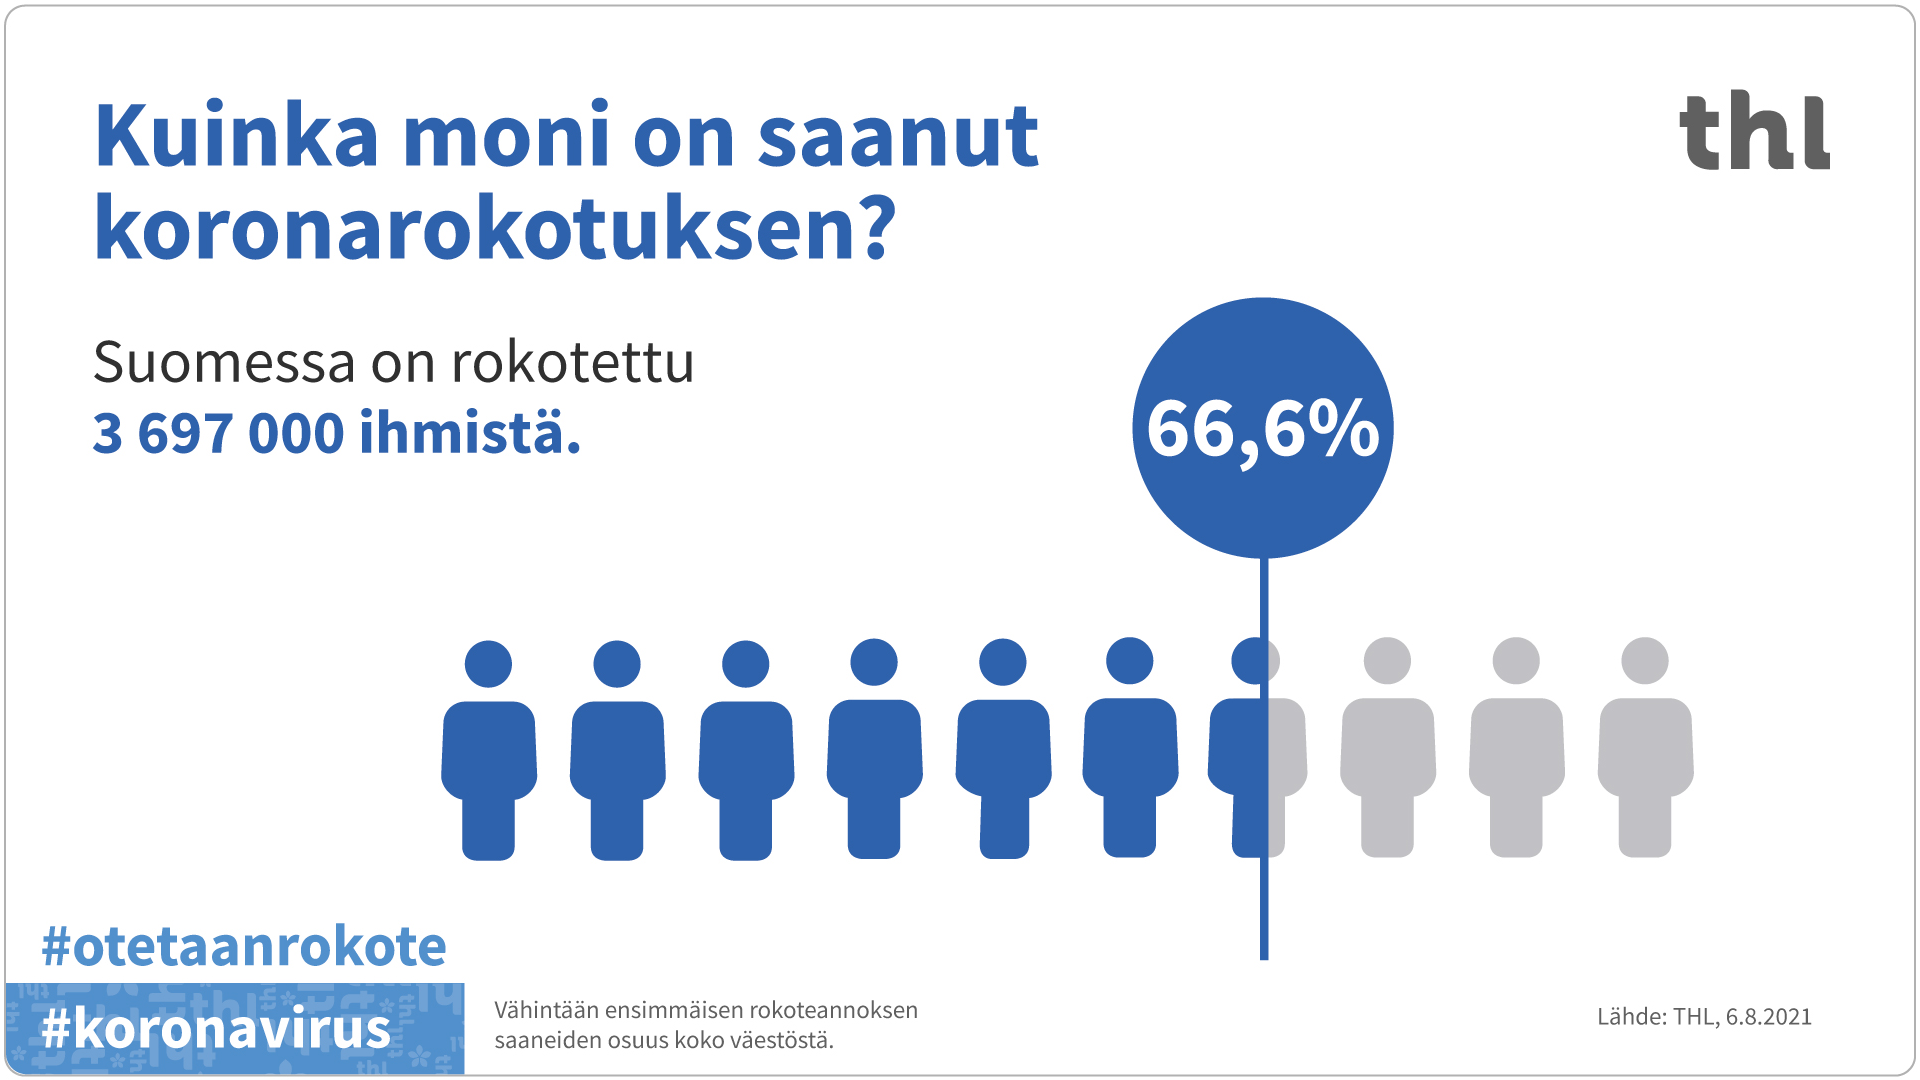 Suomessa ensimmäisen koronarokoteannoksen on saanut 3 697 000 ihmistä. 66,6 prosenttia väestöstä on saanut ensimmäisen rokoteannoksen.